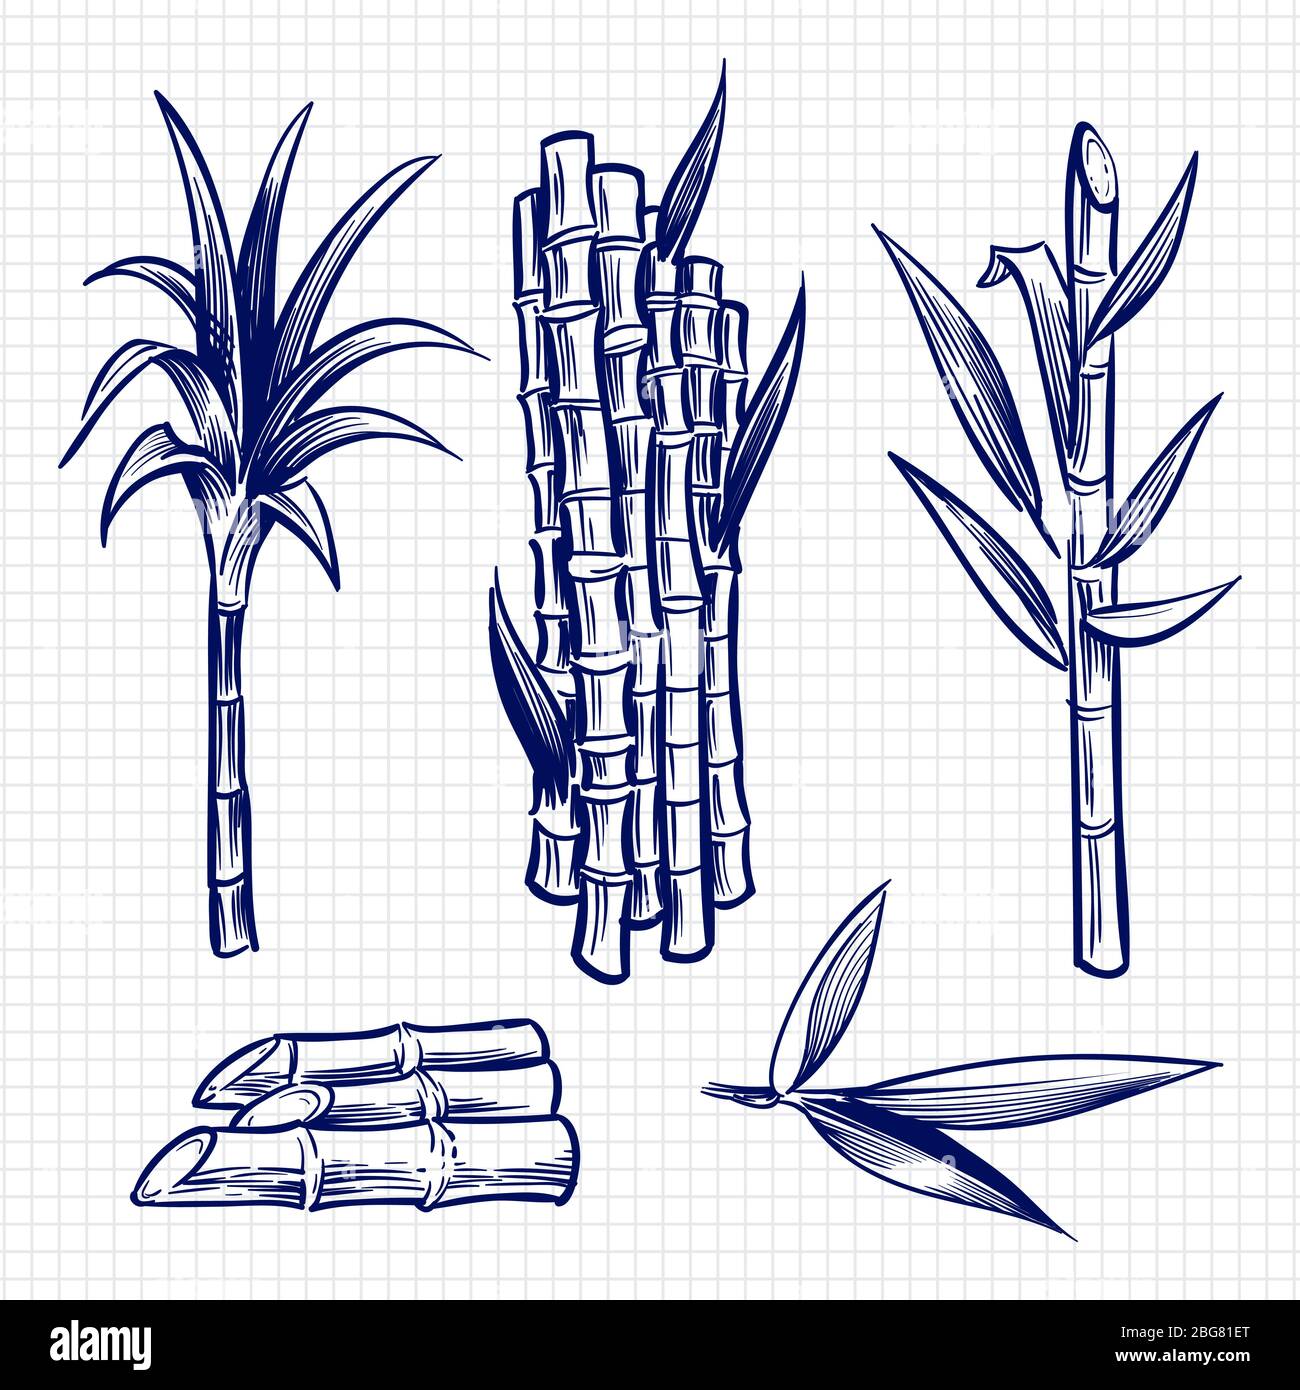 Hand drawn sugar cane set vector illustration. Cane plant, sugar ingredient stem, sugarcane harvest stalk Stock Vector